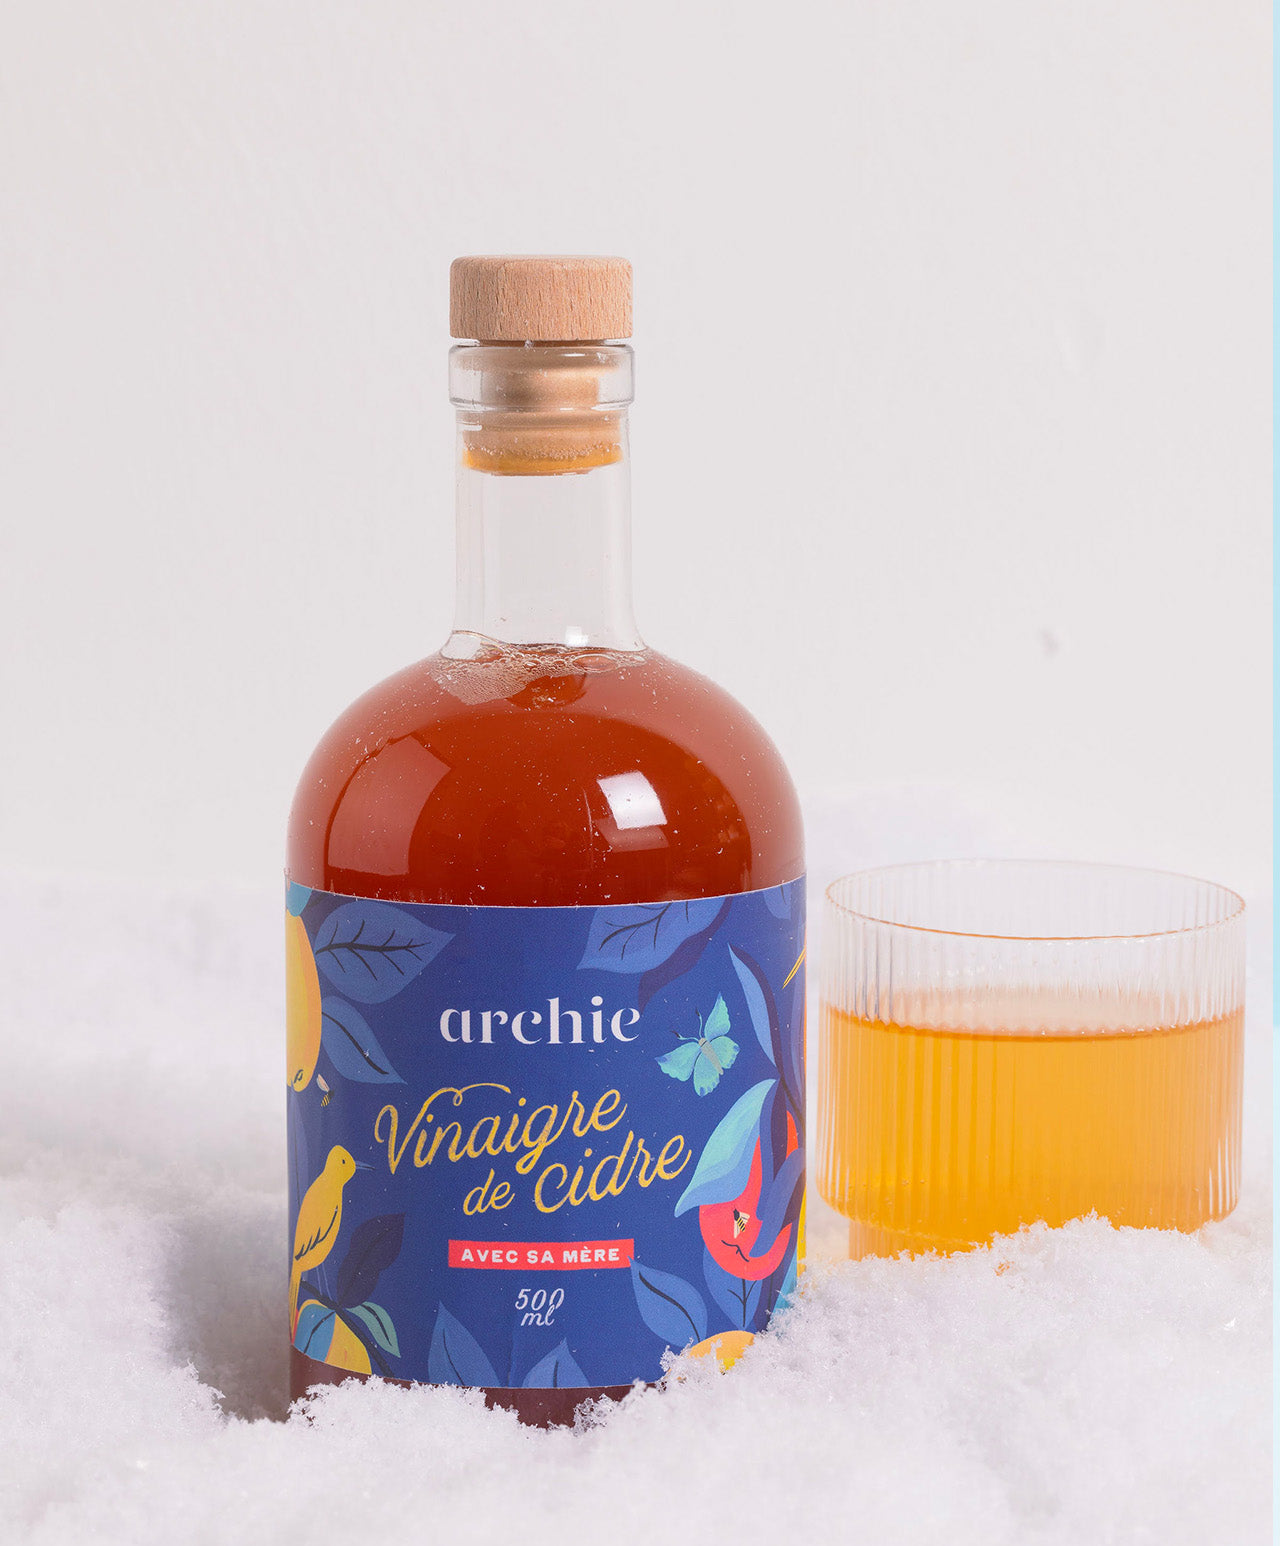 Archie, le vinaigre de cidre le plus récompensé d'Europe